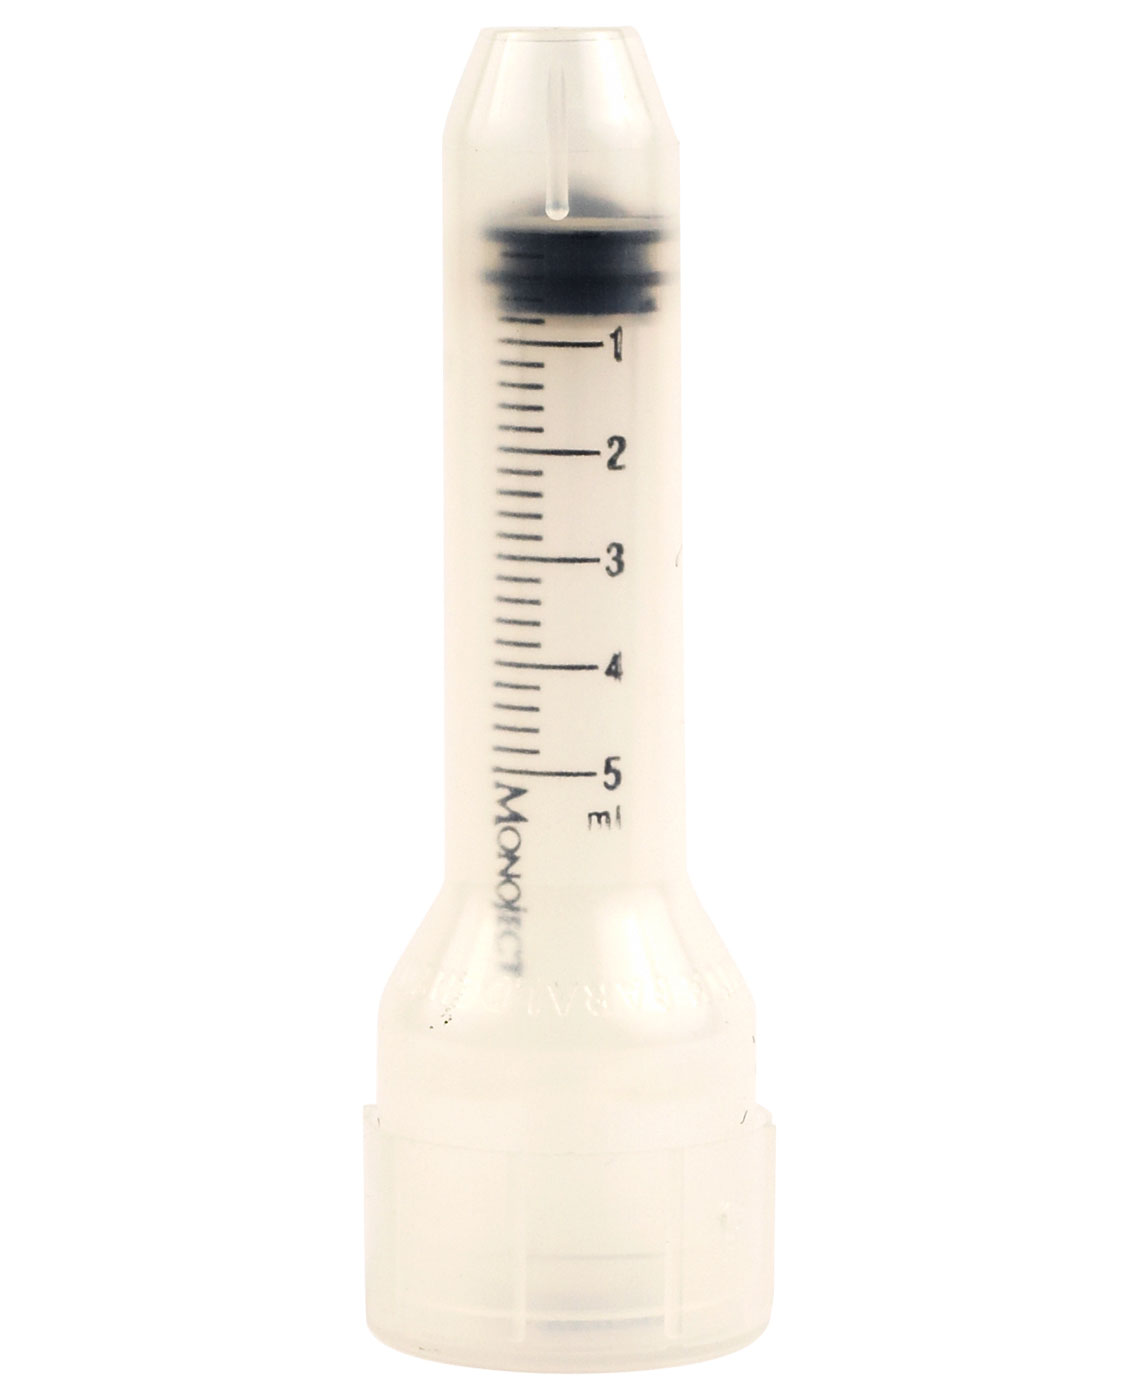 Hypodermic Syringe 5ml | First Aid Fast